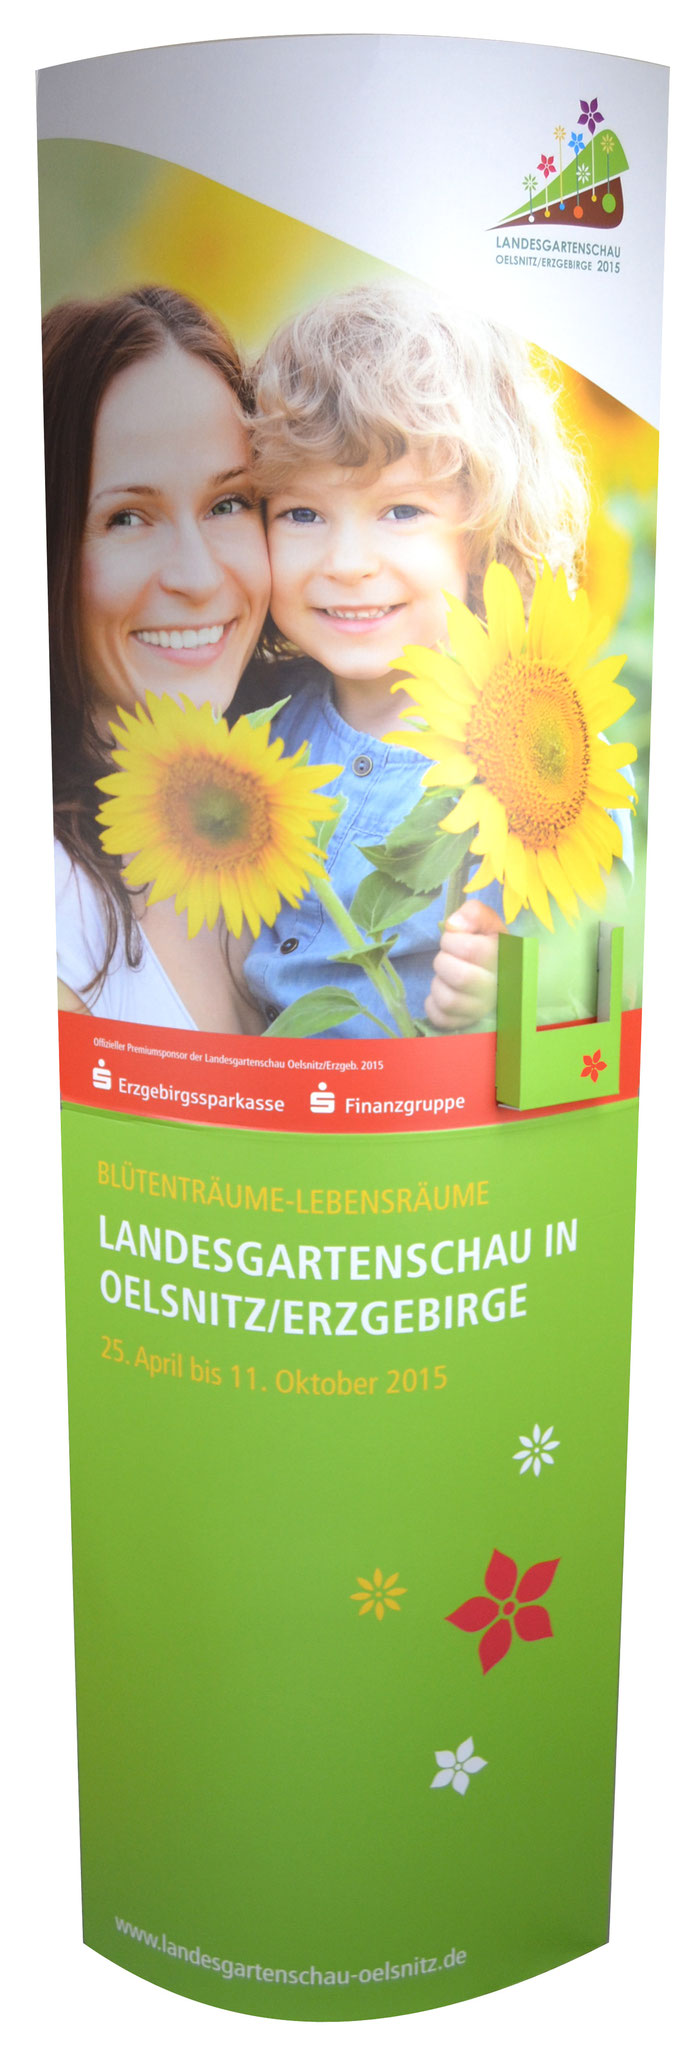 Ellipse mit Dispenser "Landesgartenschau"